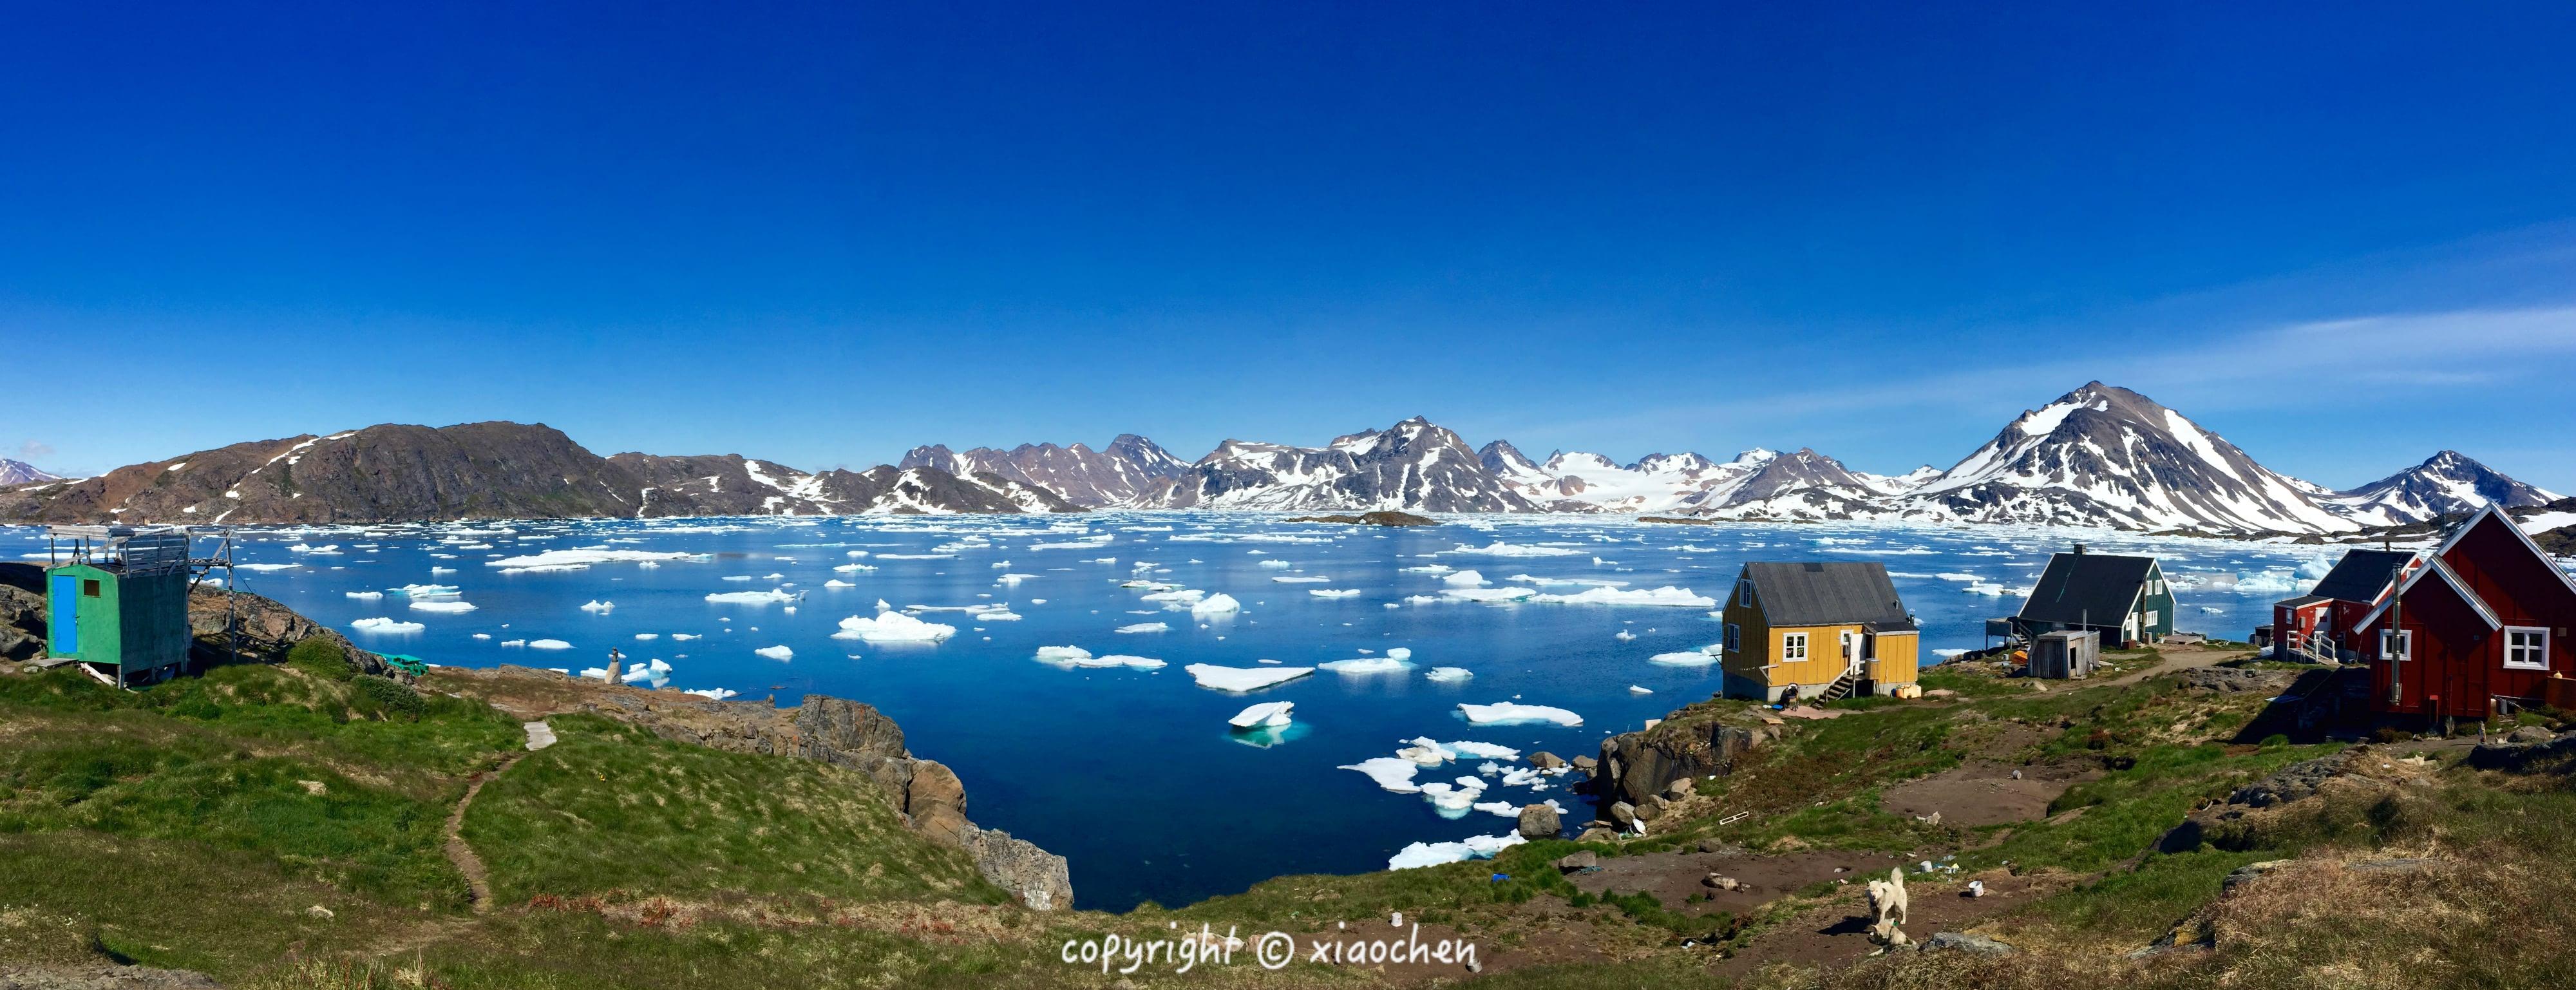 2018格陵兰岛旅游攻略,格陵兰岛自由行攻略,马蜂窝格陵兰岛出游攻略游记 - 马蜂窝